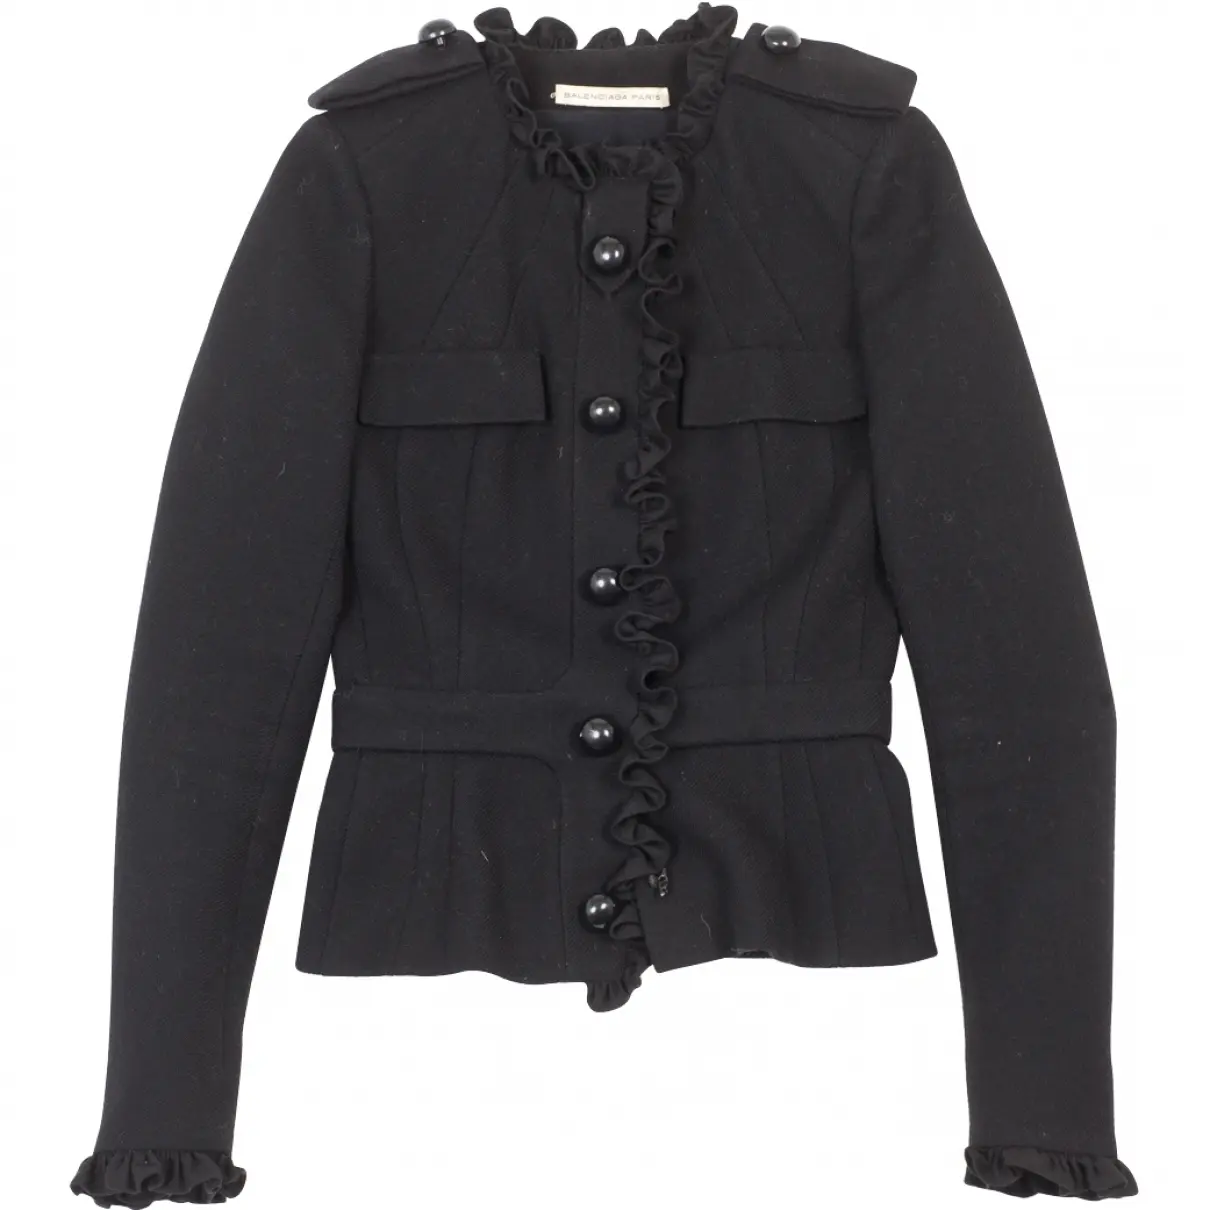 Black Wool Jacket Balenciaga